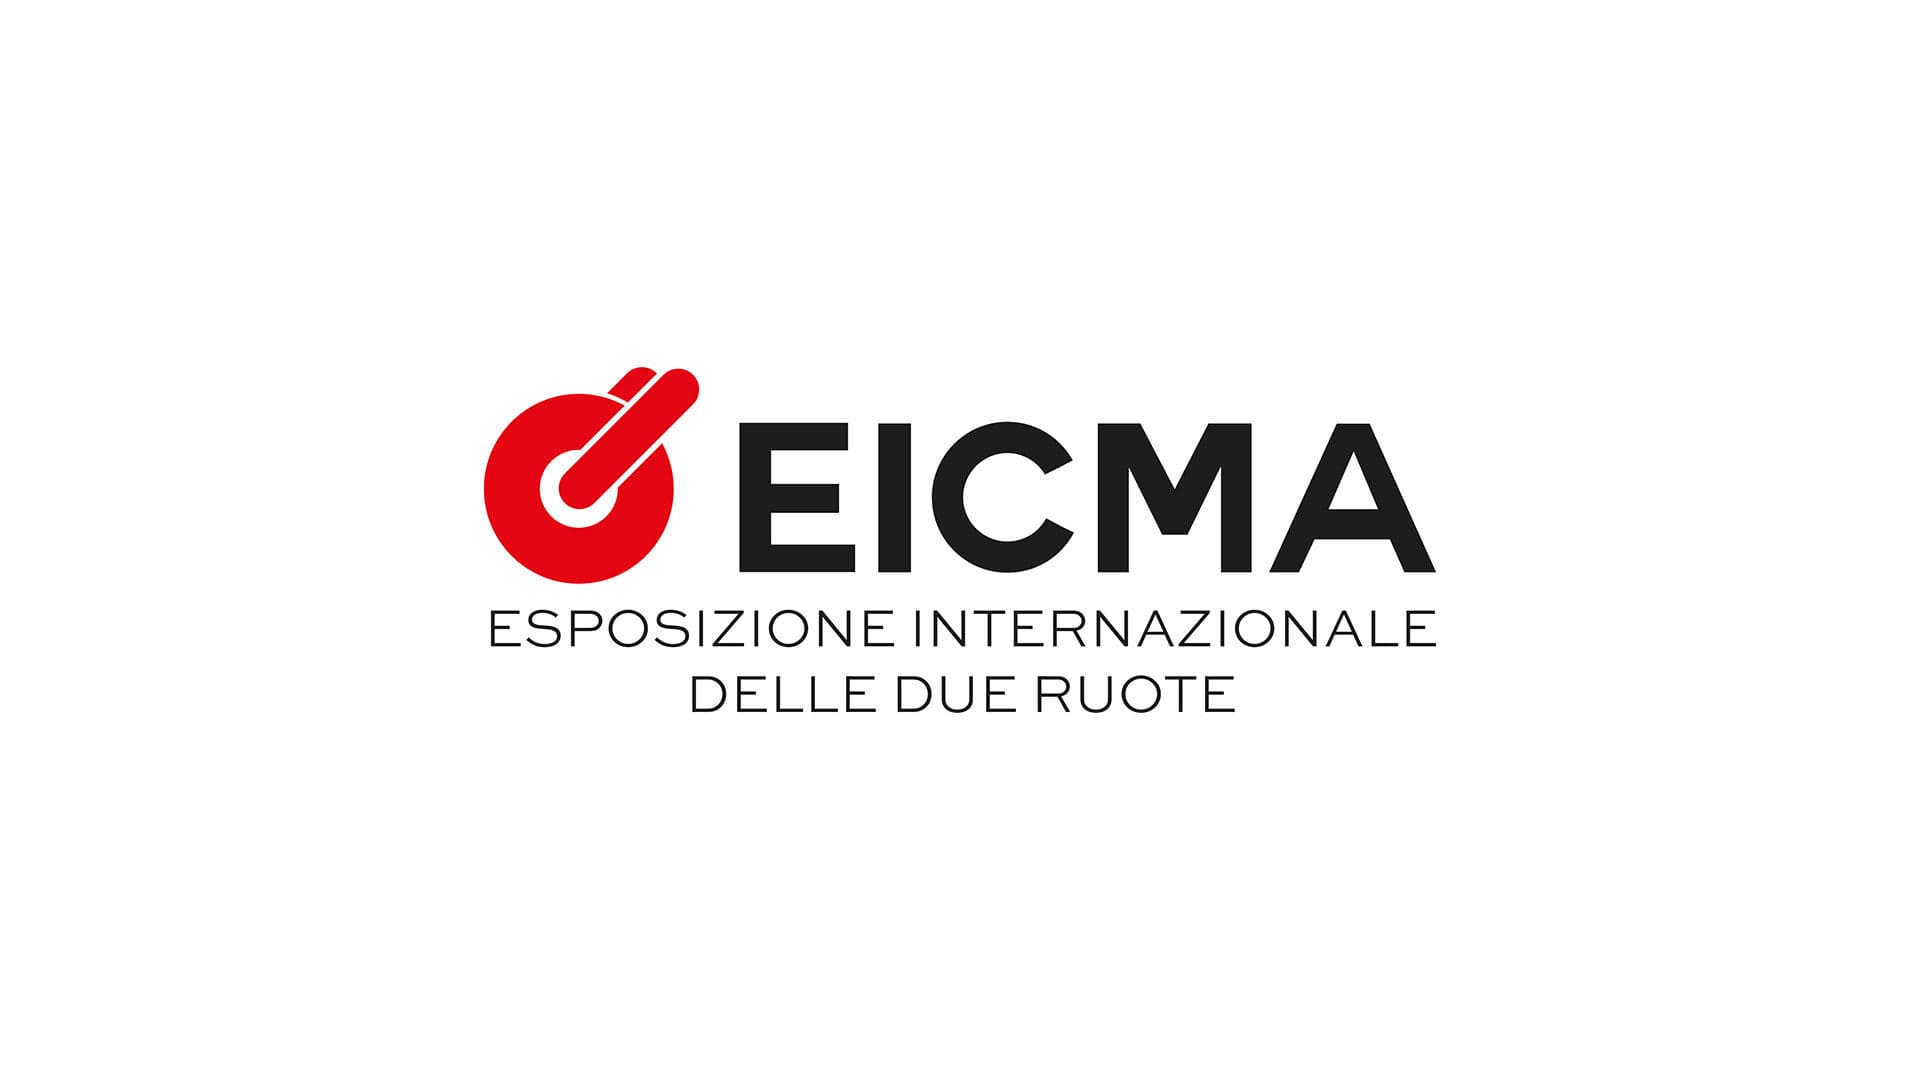 eicma_logo